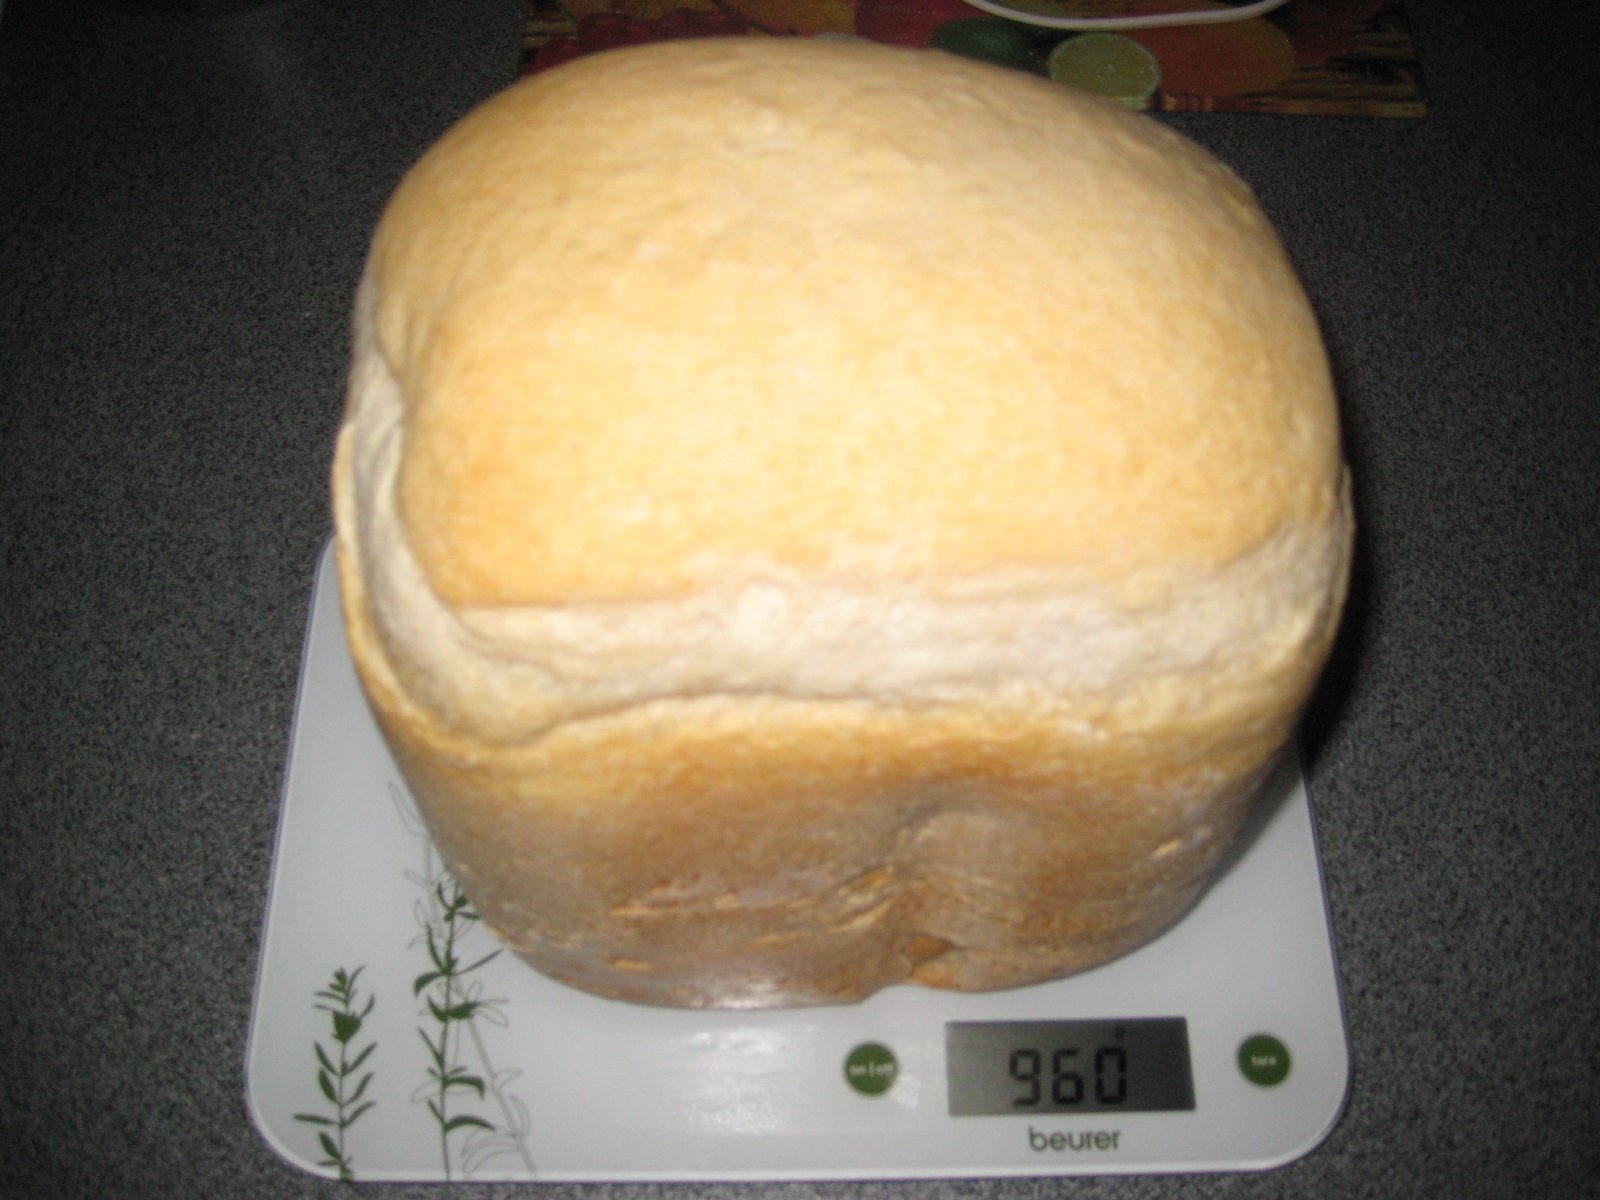 Alap kovászos búza kenyér (kenyérkészítő)